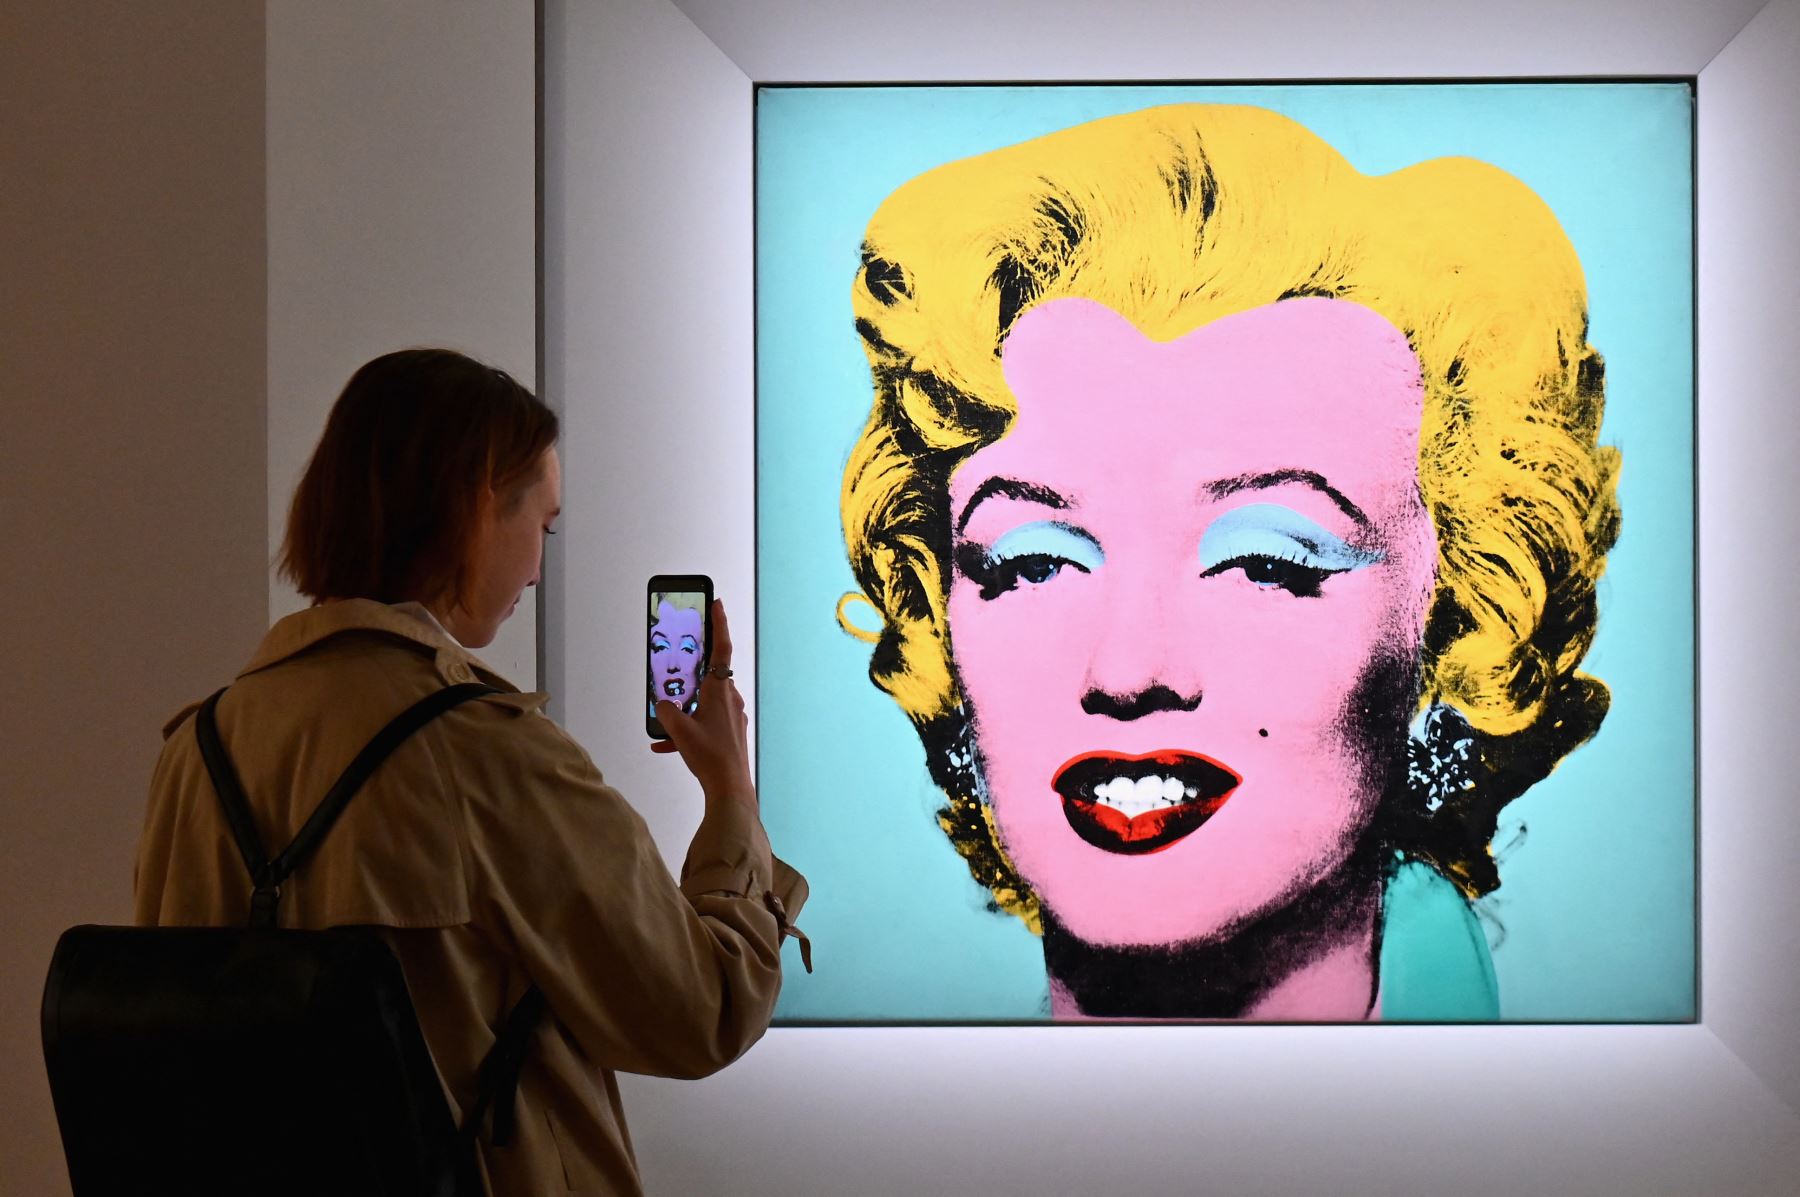 Retrato de Marilyn Monroe pintado por Andy Warhol fue subastado en $ 195 millones